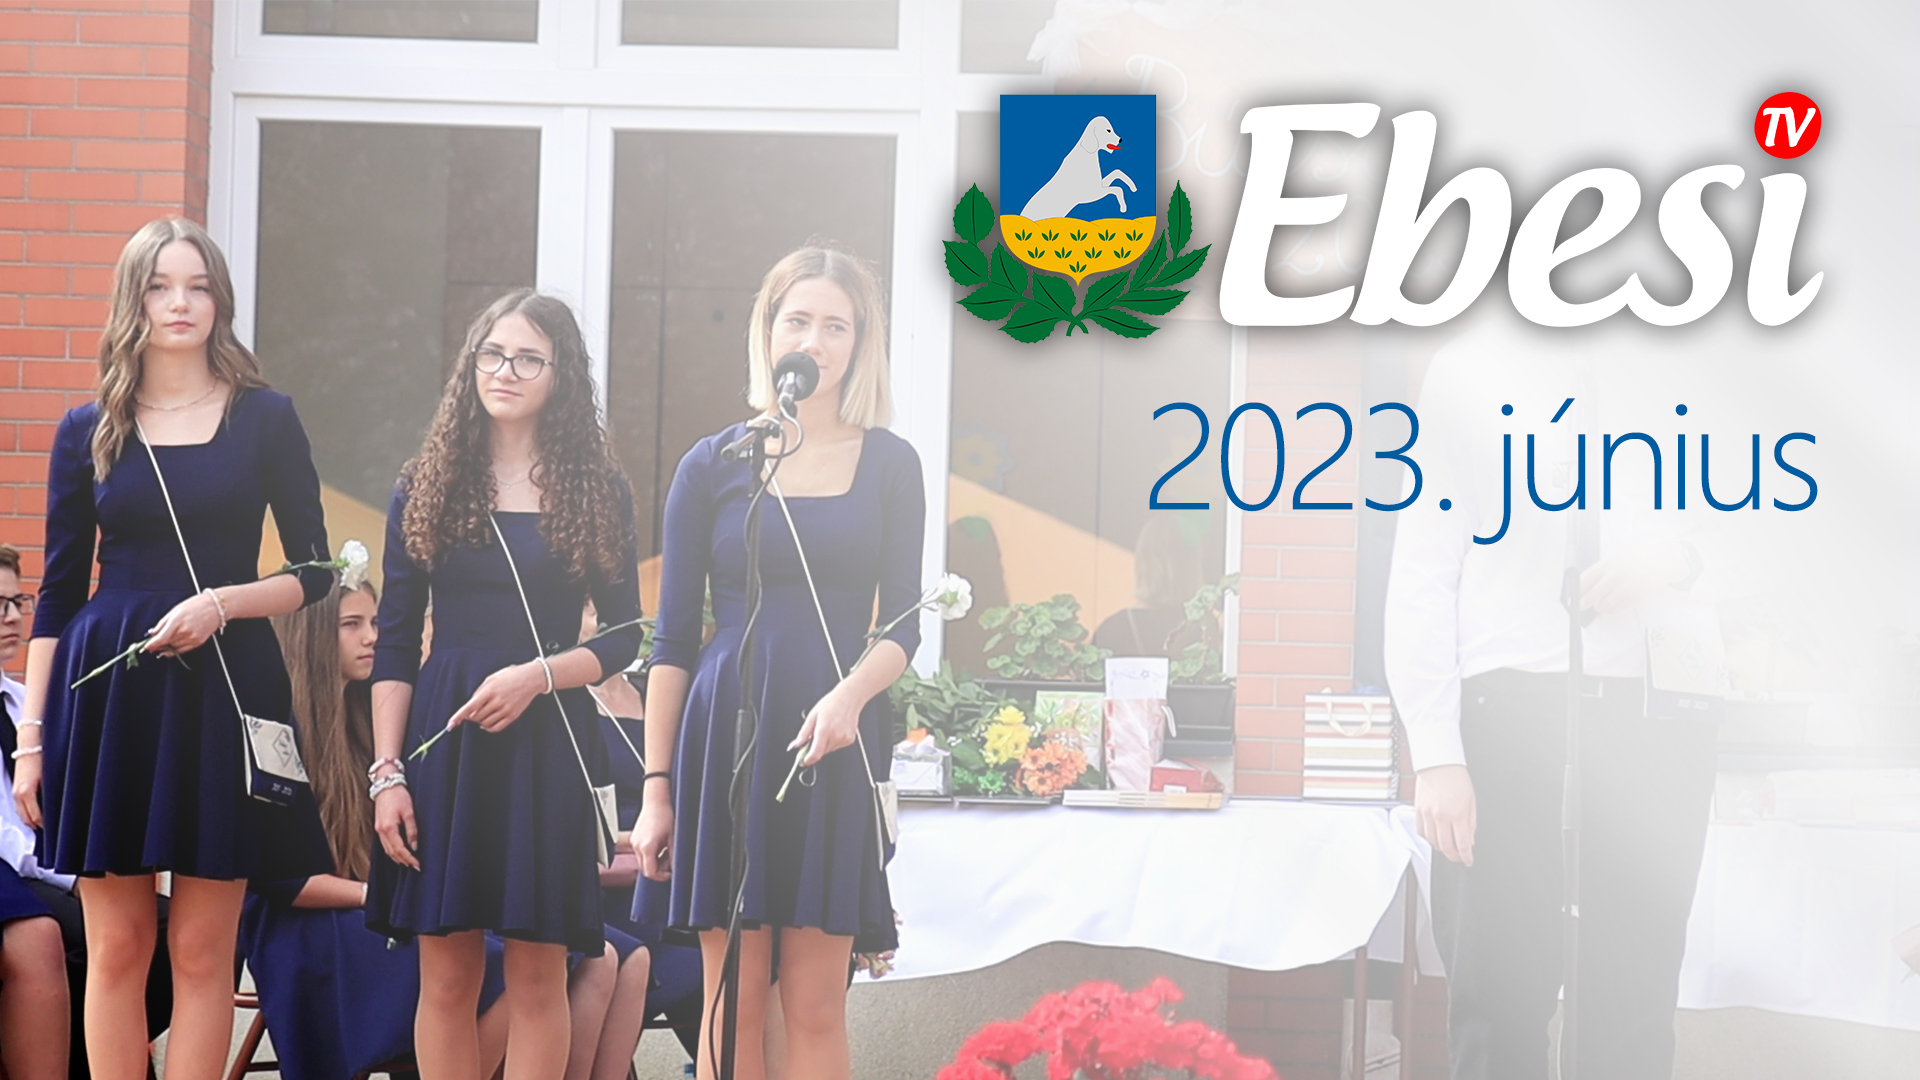 Ebesi TV – 2023 június